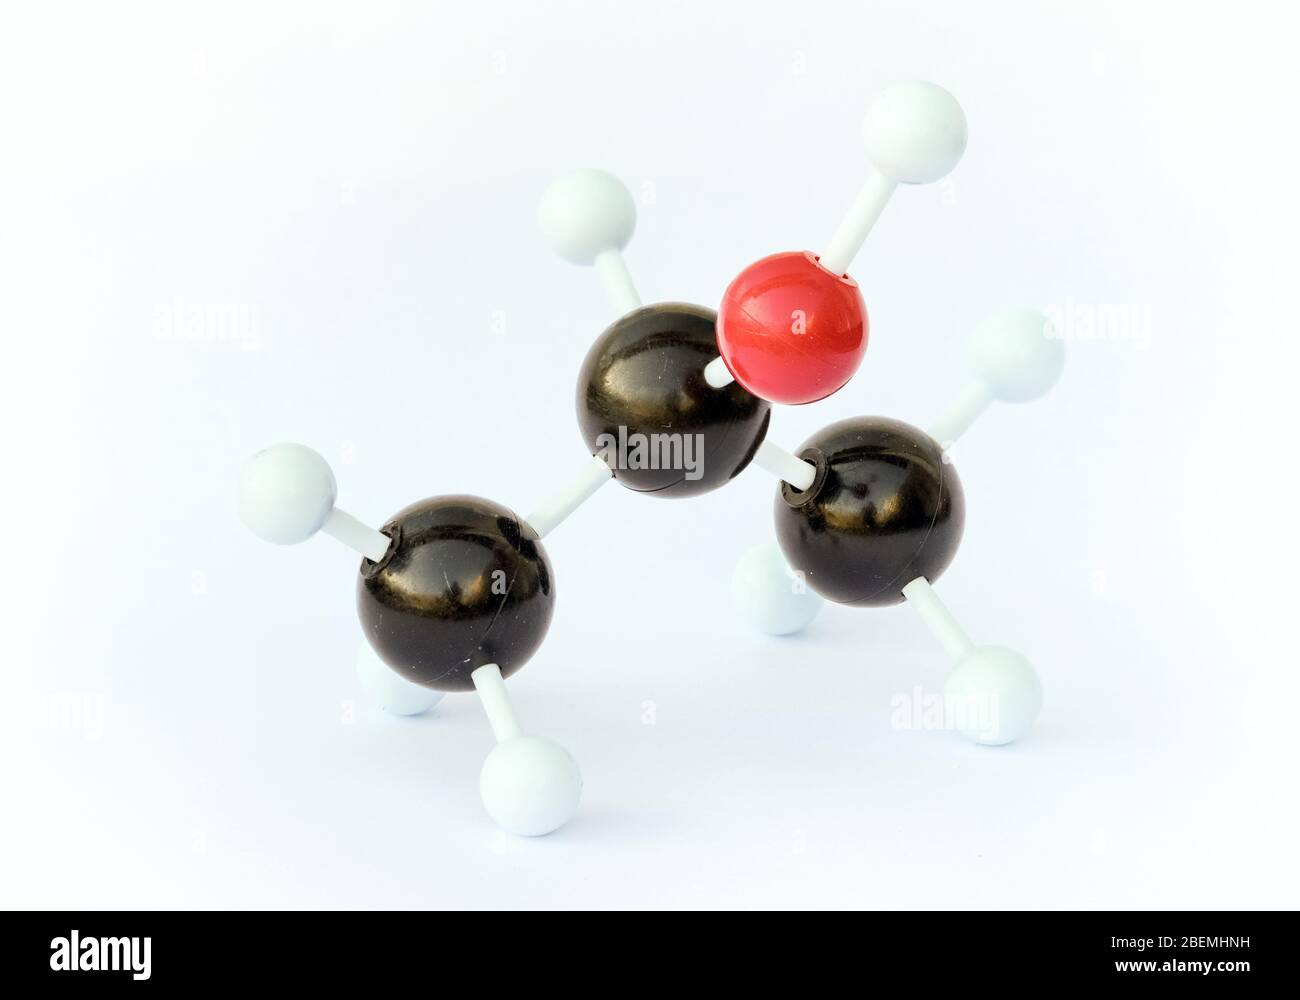 Modèle en plastique à bille et à bâton d'une molécule d'alcool isopropylique (isopropanol) sur fond blanc. Banque D'Images